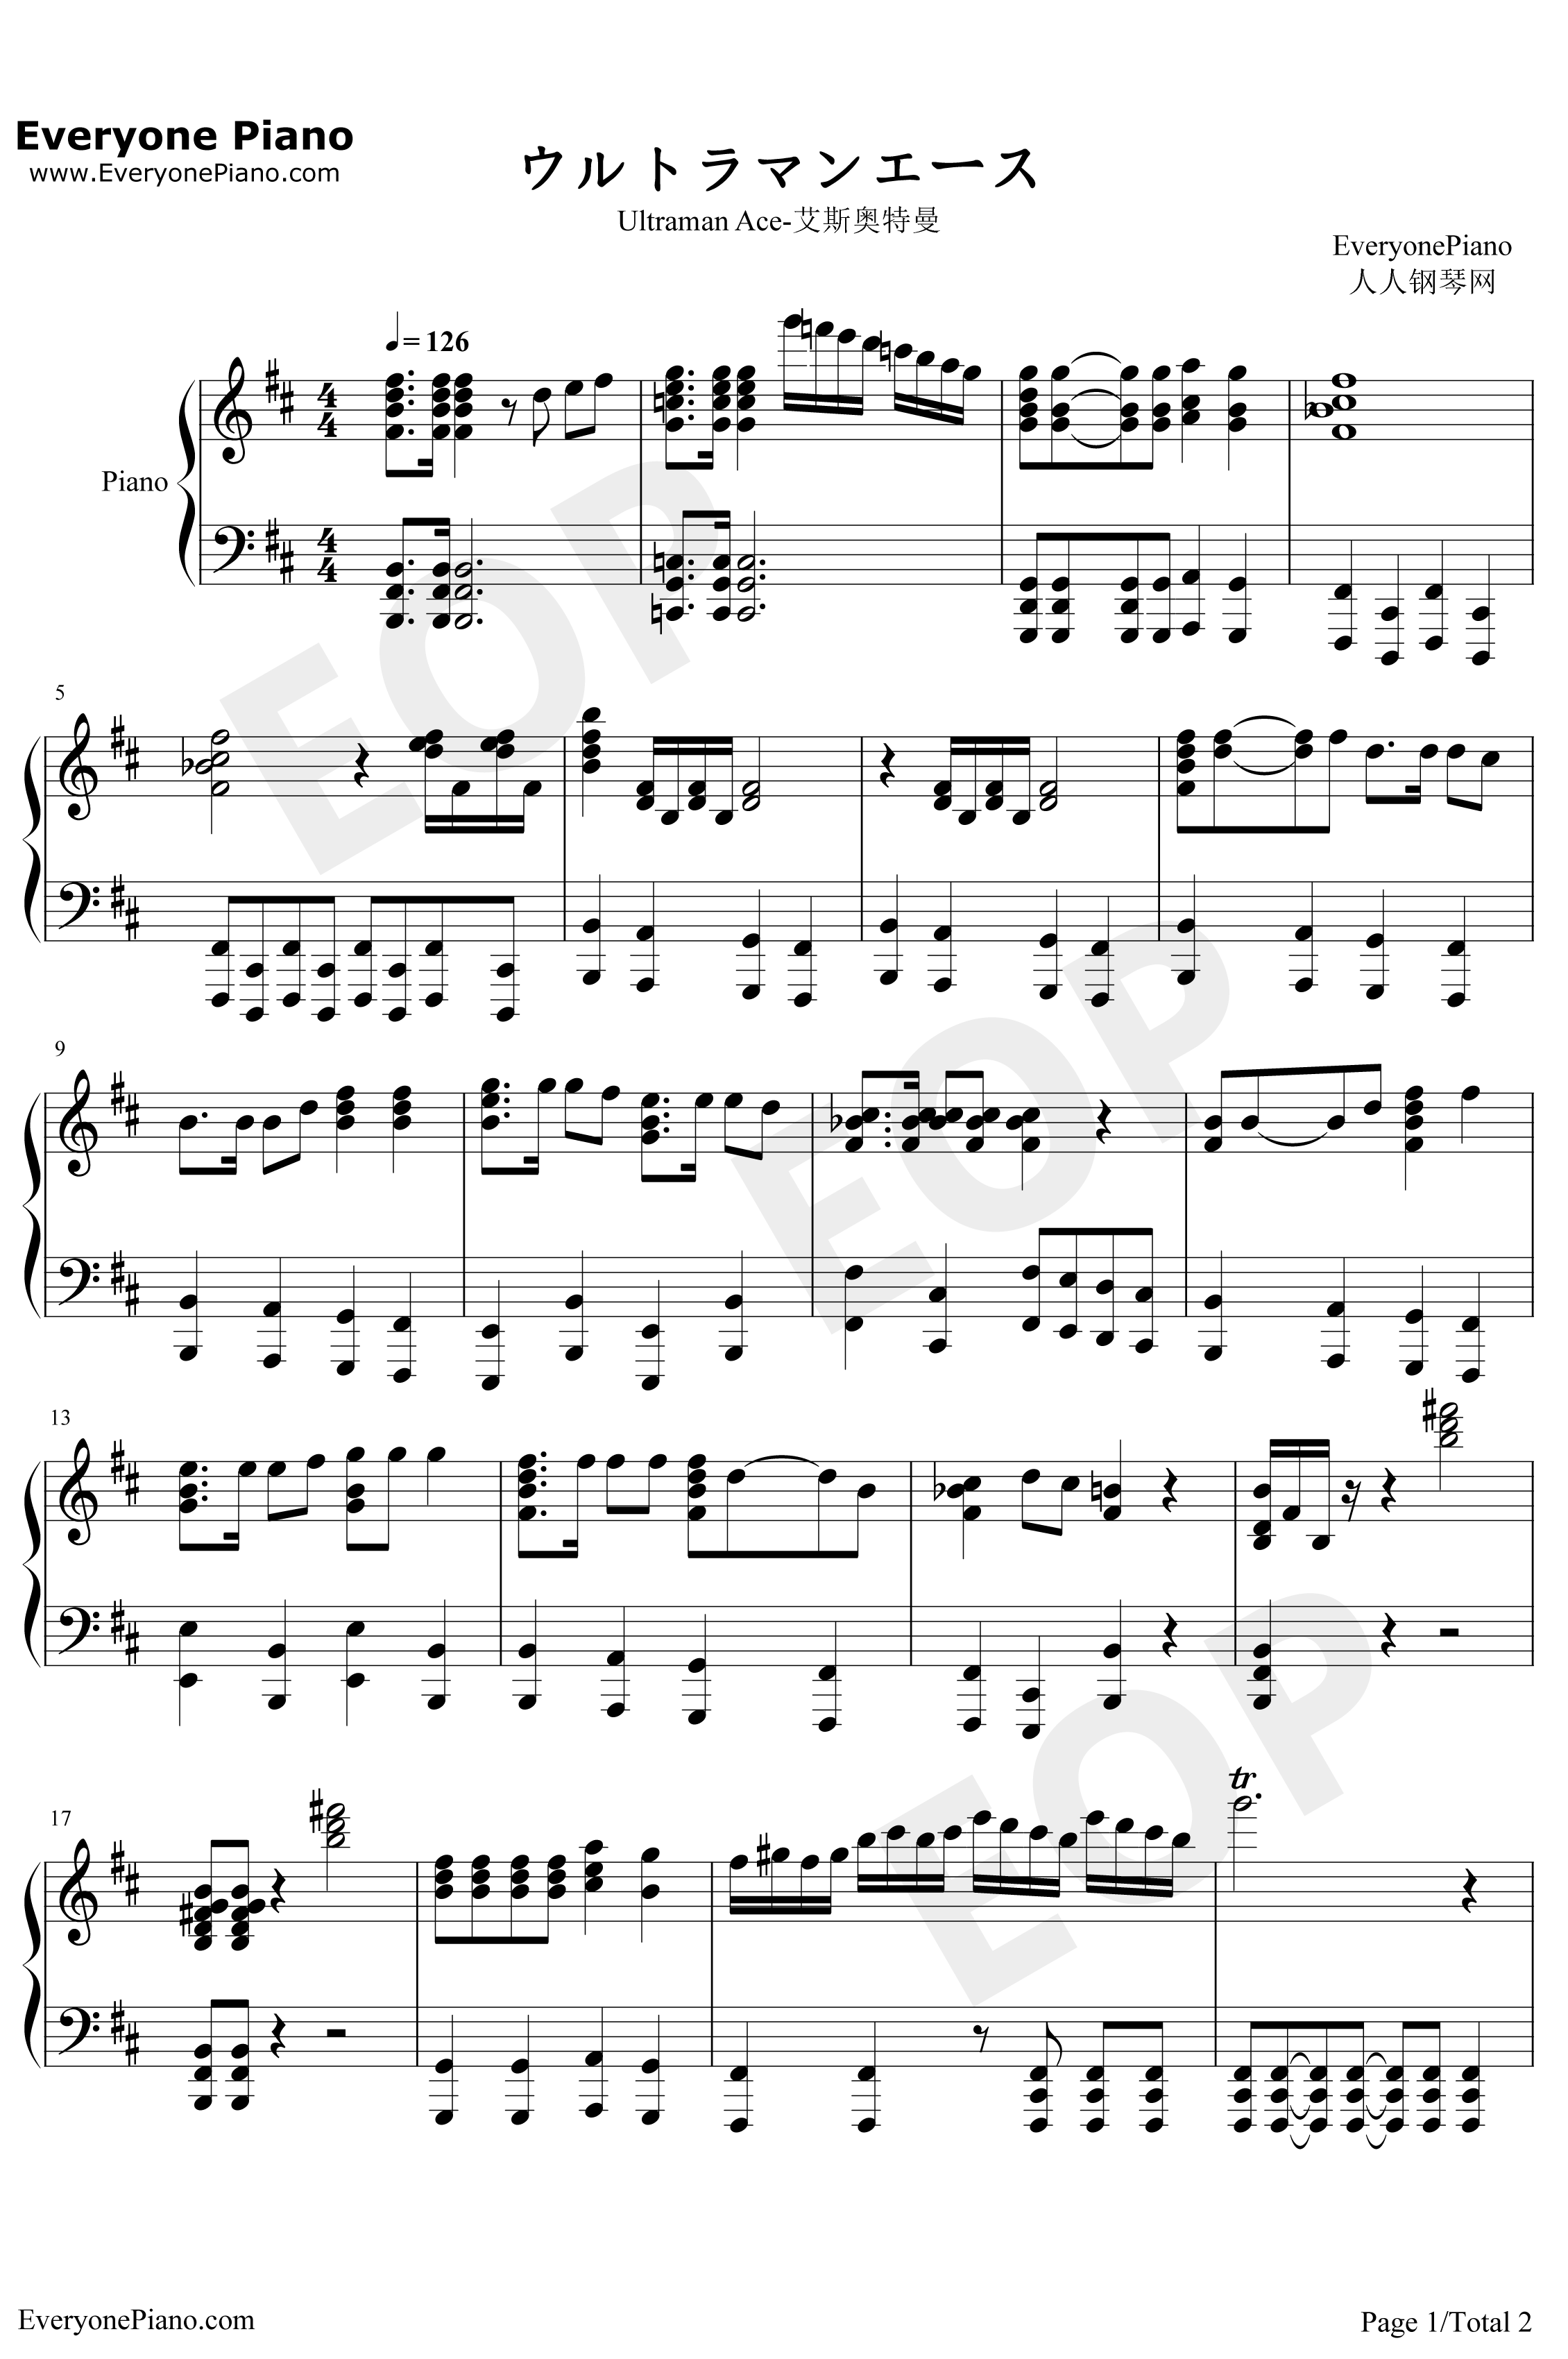 艾斯奥特曼钢琴谱-葵まさひこ-ウルトラマンエース1